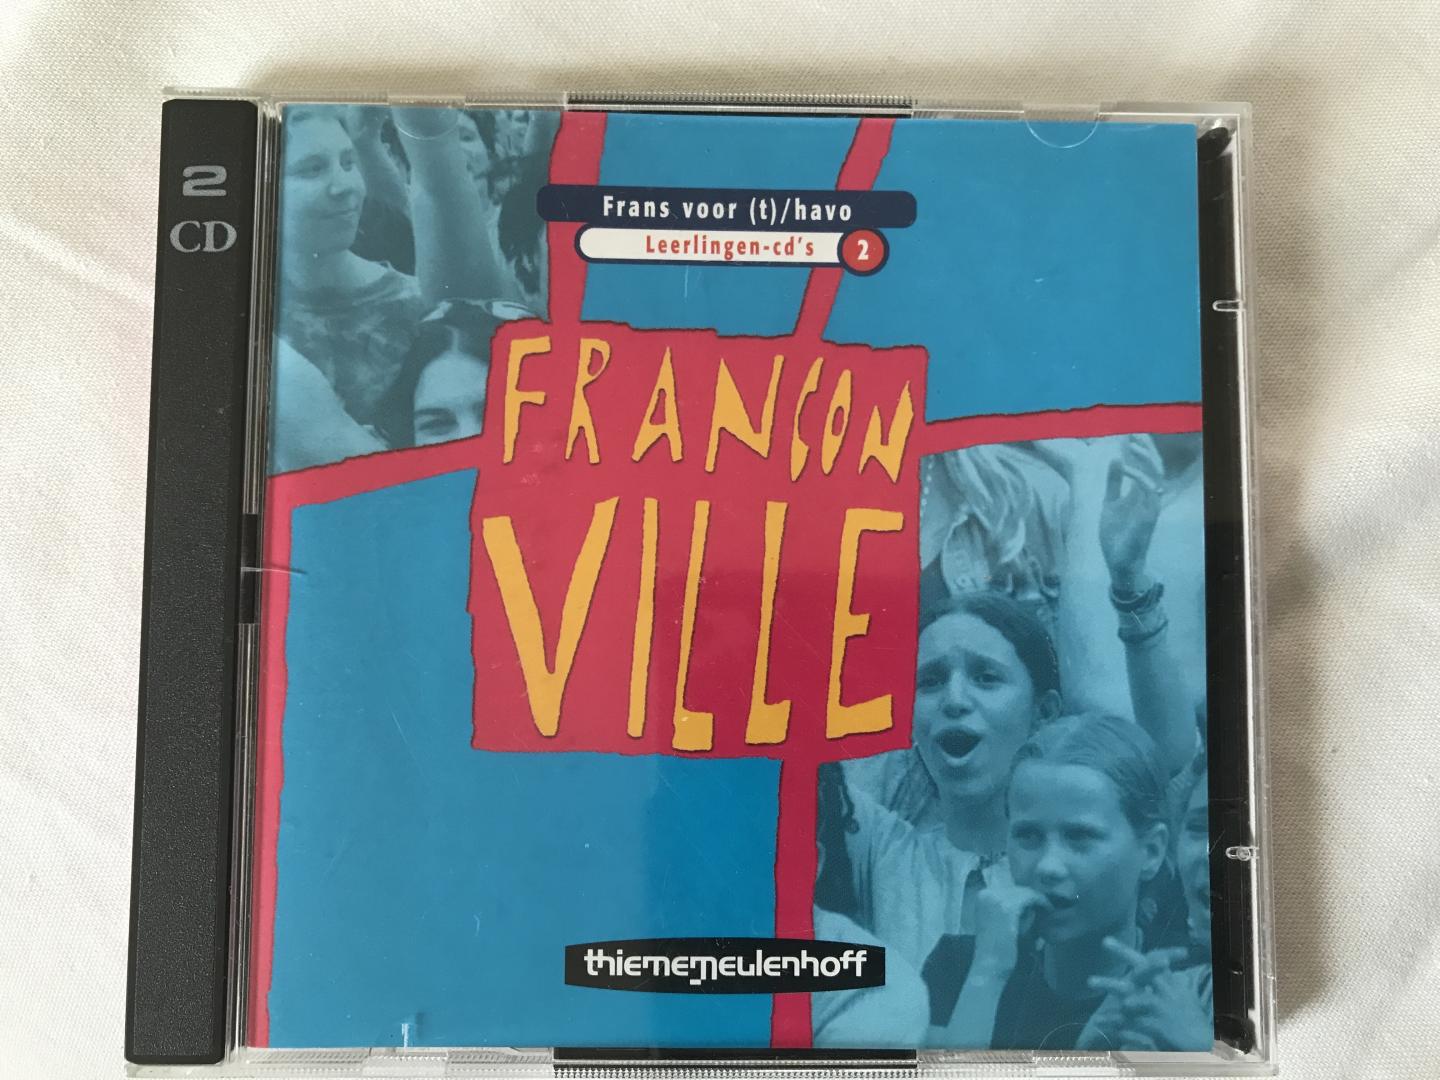 Koning, Karin de - FRANCONVILLE Frans voor (t) / havo, Leerlingen-cd’s